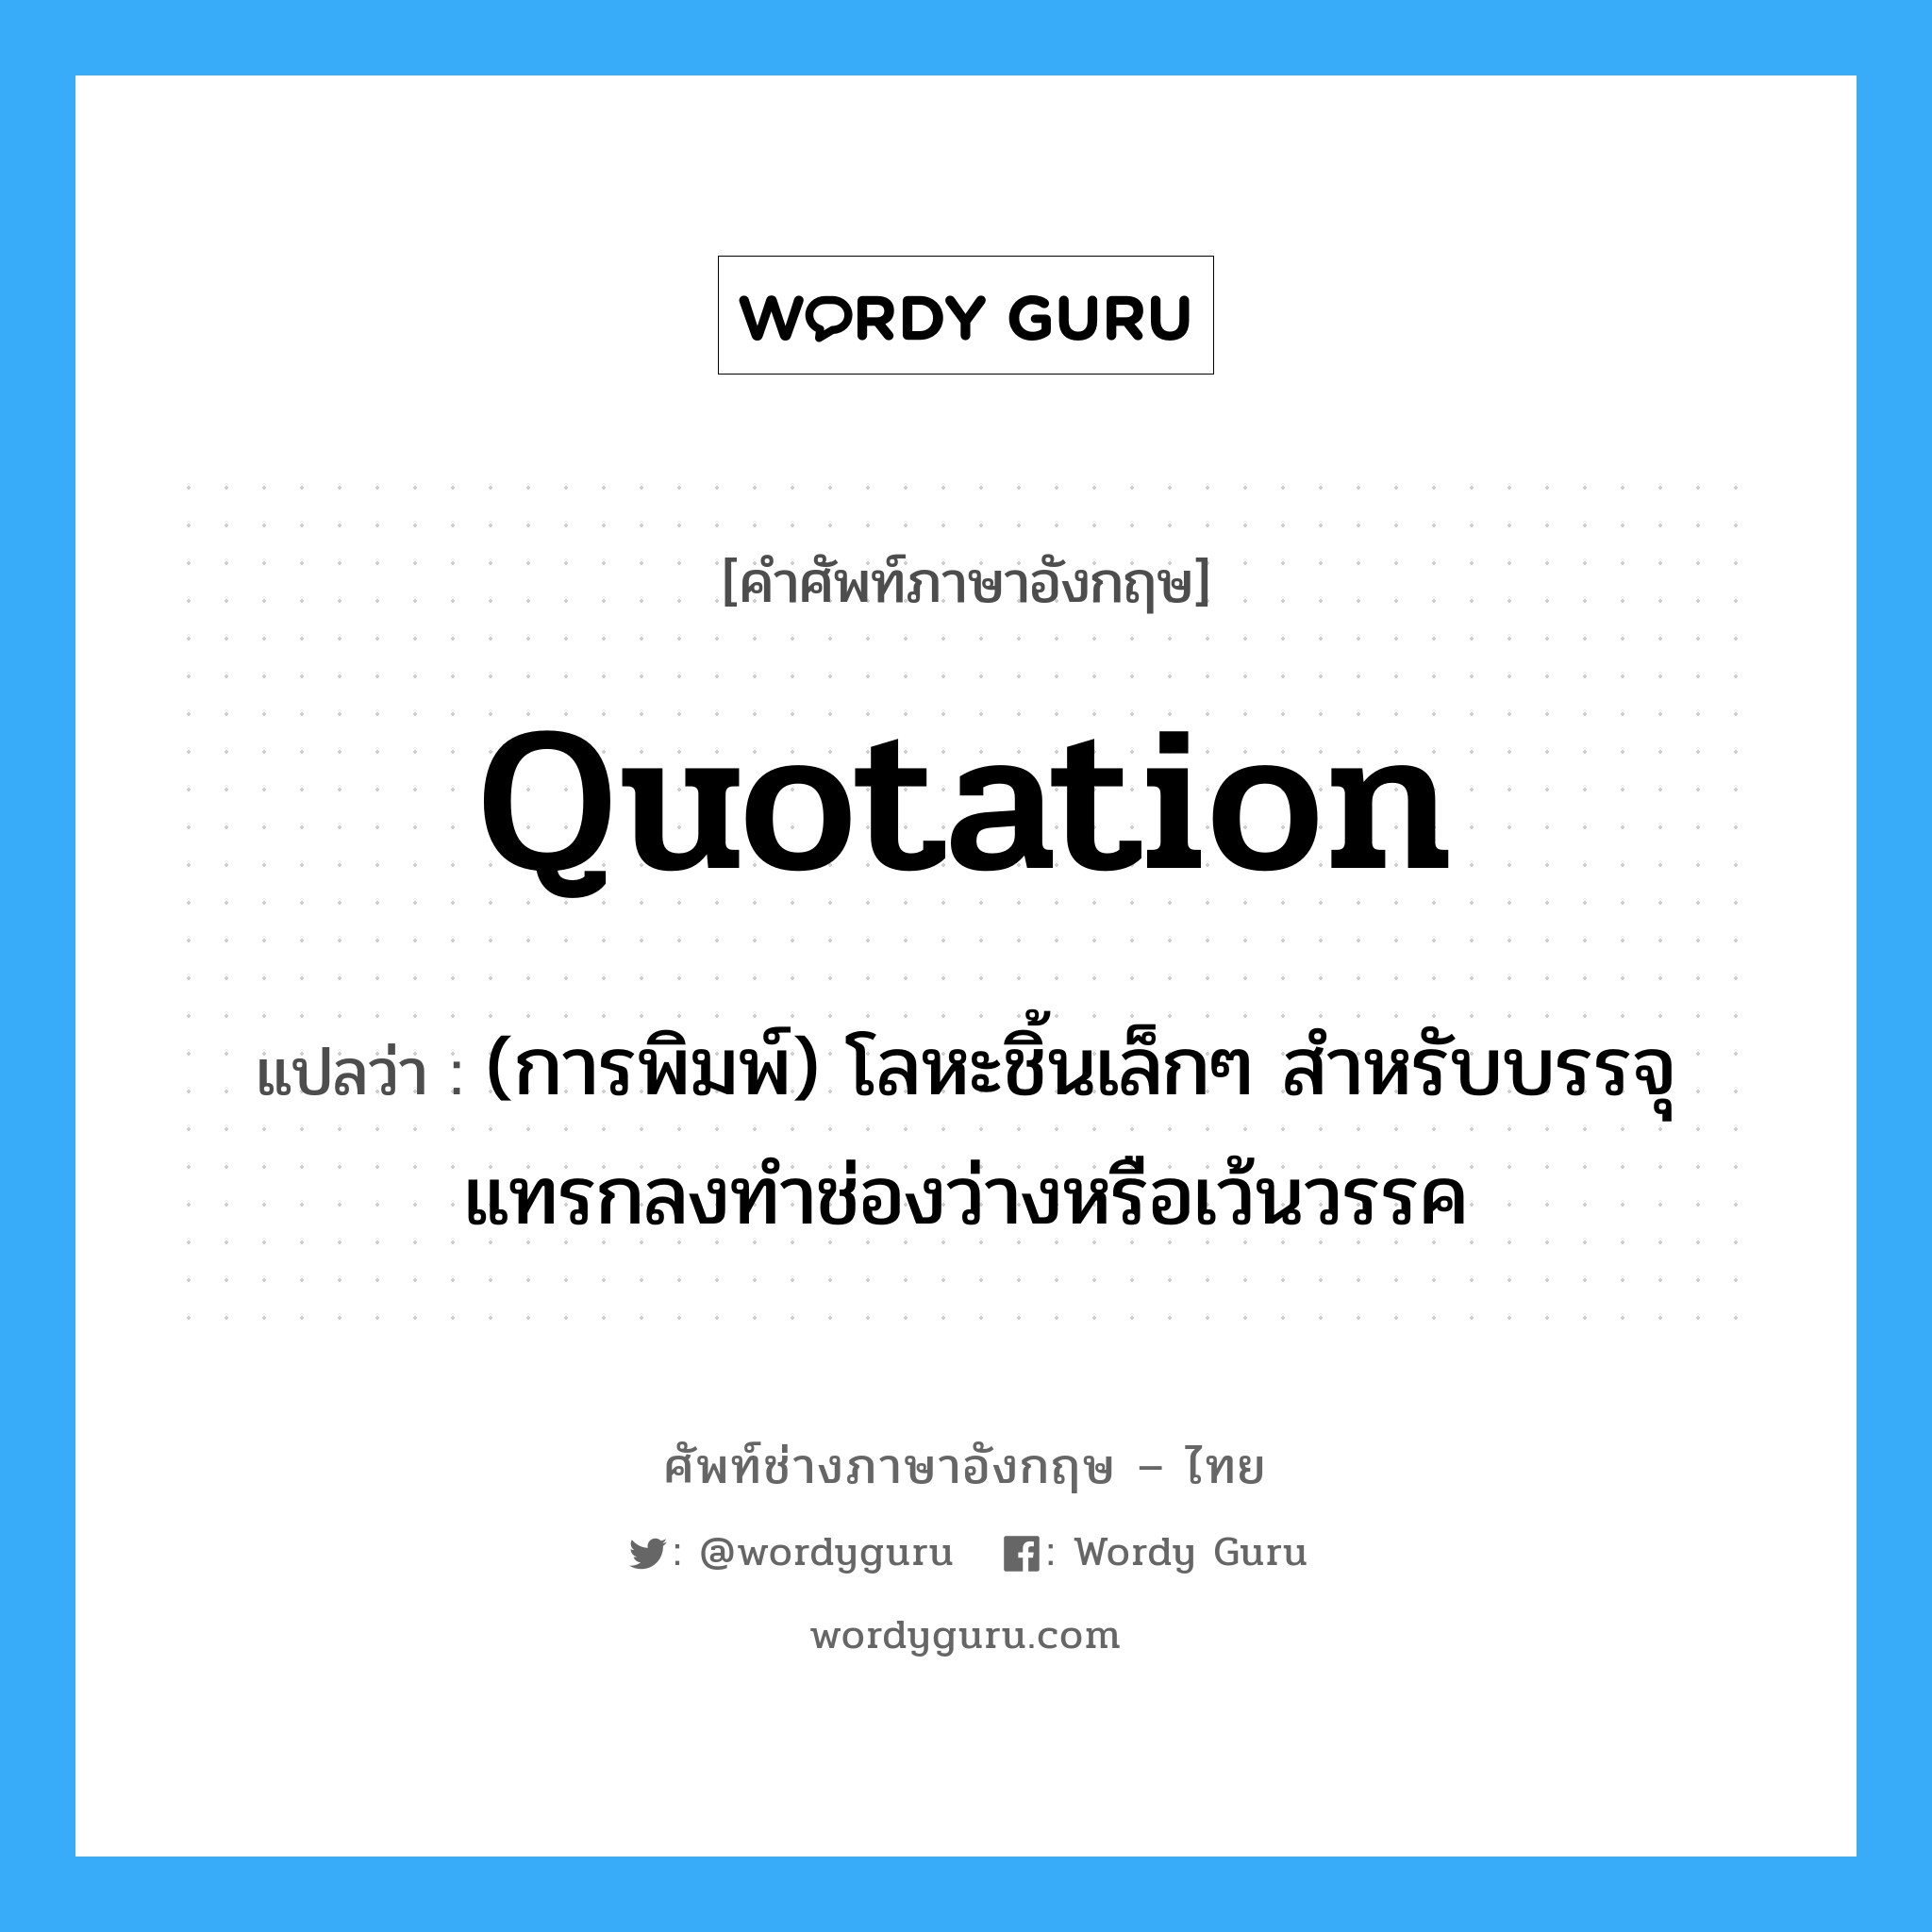 quotation แปลว่า?, คำศัพท์ช่างภาษาอังกฤษ - ไทย quotation คำศัพท์ภาษาอังกฤษ quotation แปลว่า (การพิมพ์) โลหะชิ้นเล็กๆ สำหรับบรรจุแทรกลงทำช่องว่างหรือเว้นวรรค